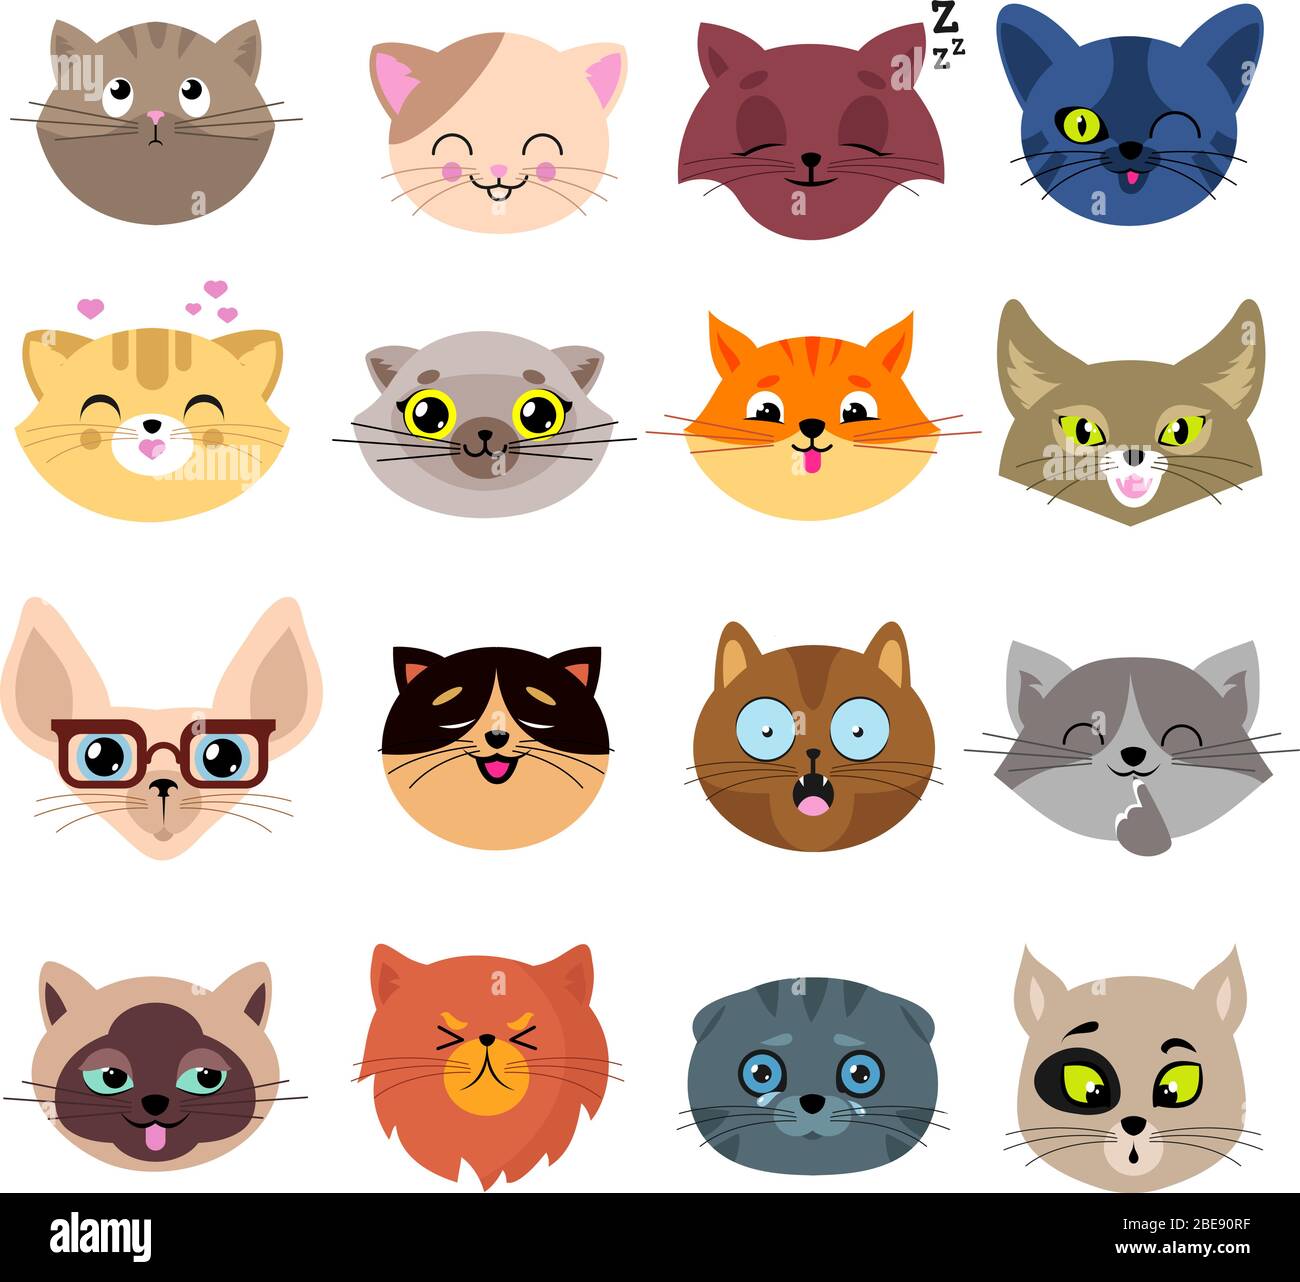 Divertenti facce di gatto cartoon. Carino set di ritratti di gattino. Illustrazione del viso animale dei gatti cartoni animati Illustrazione Vettoriale